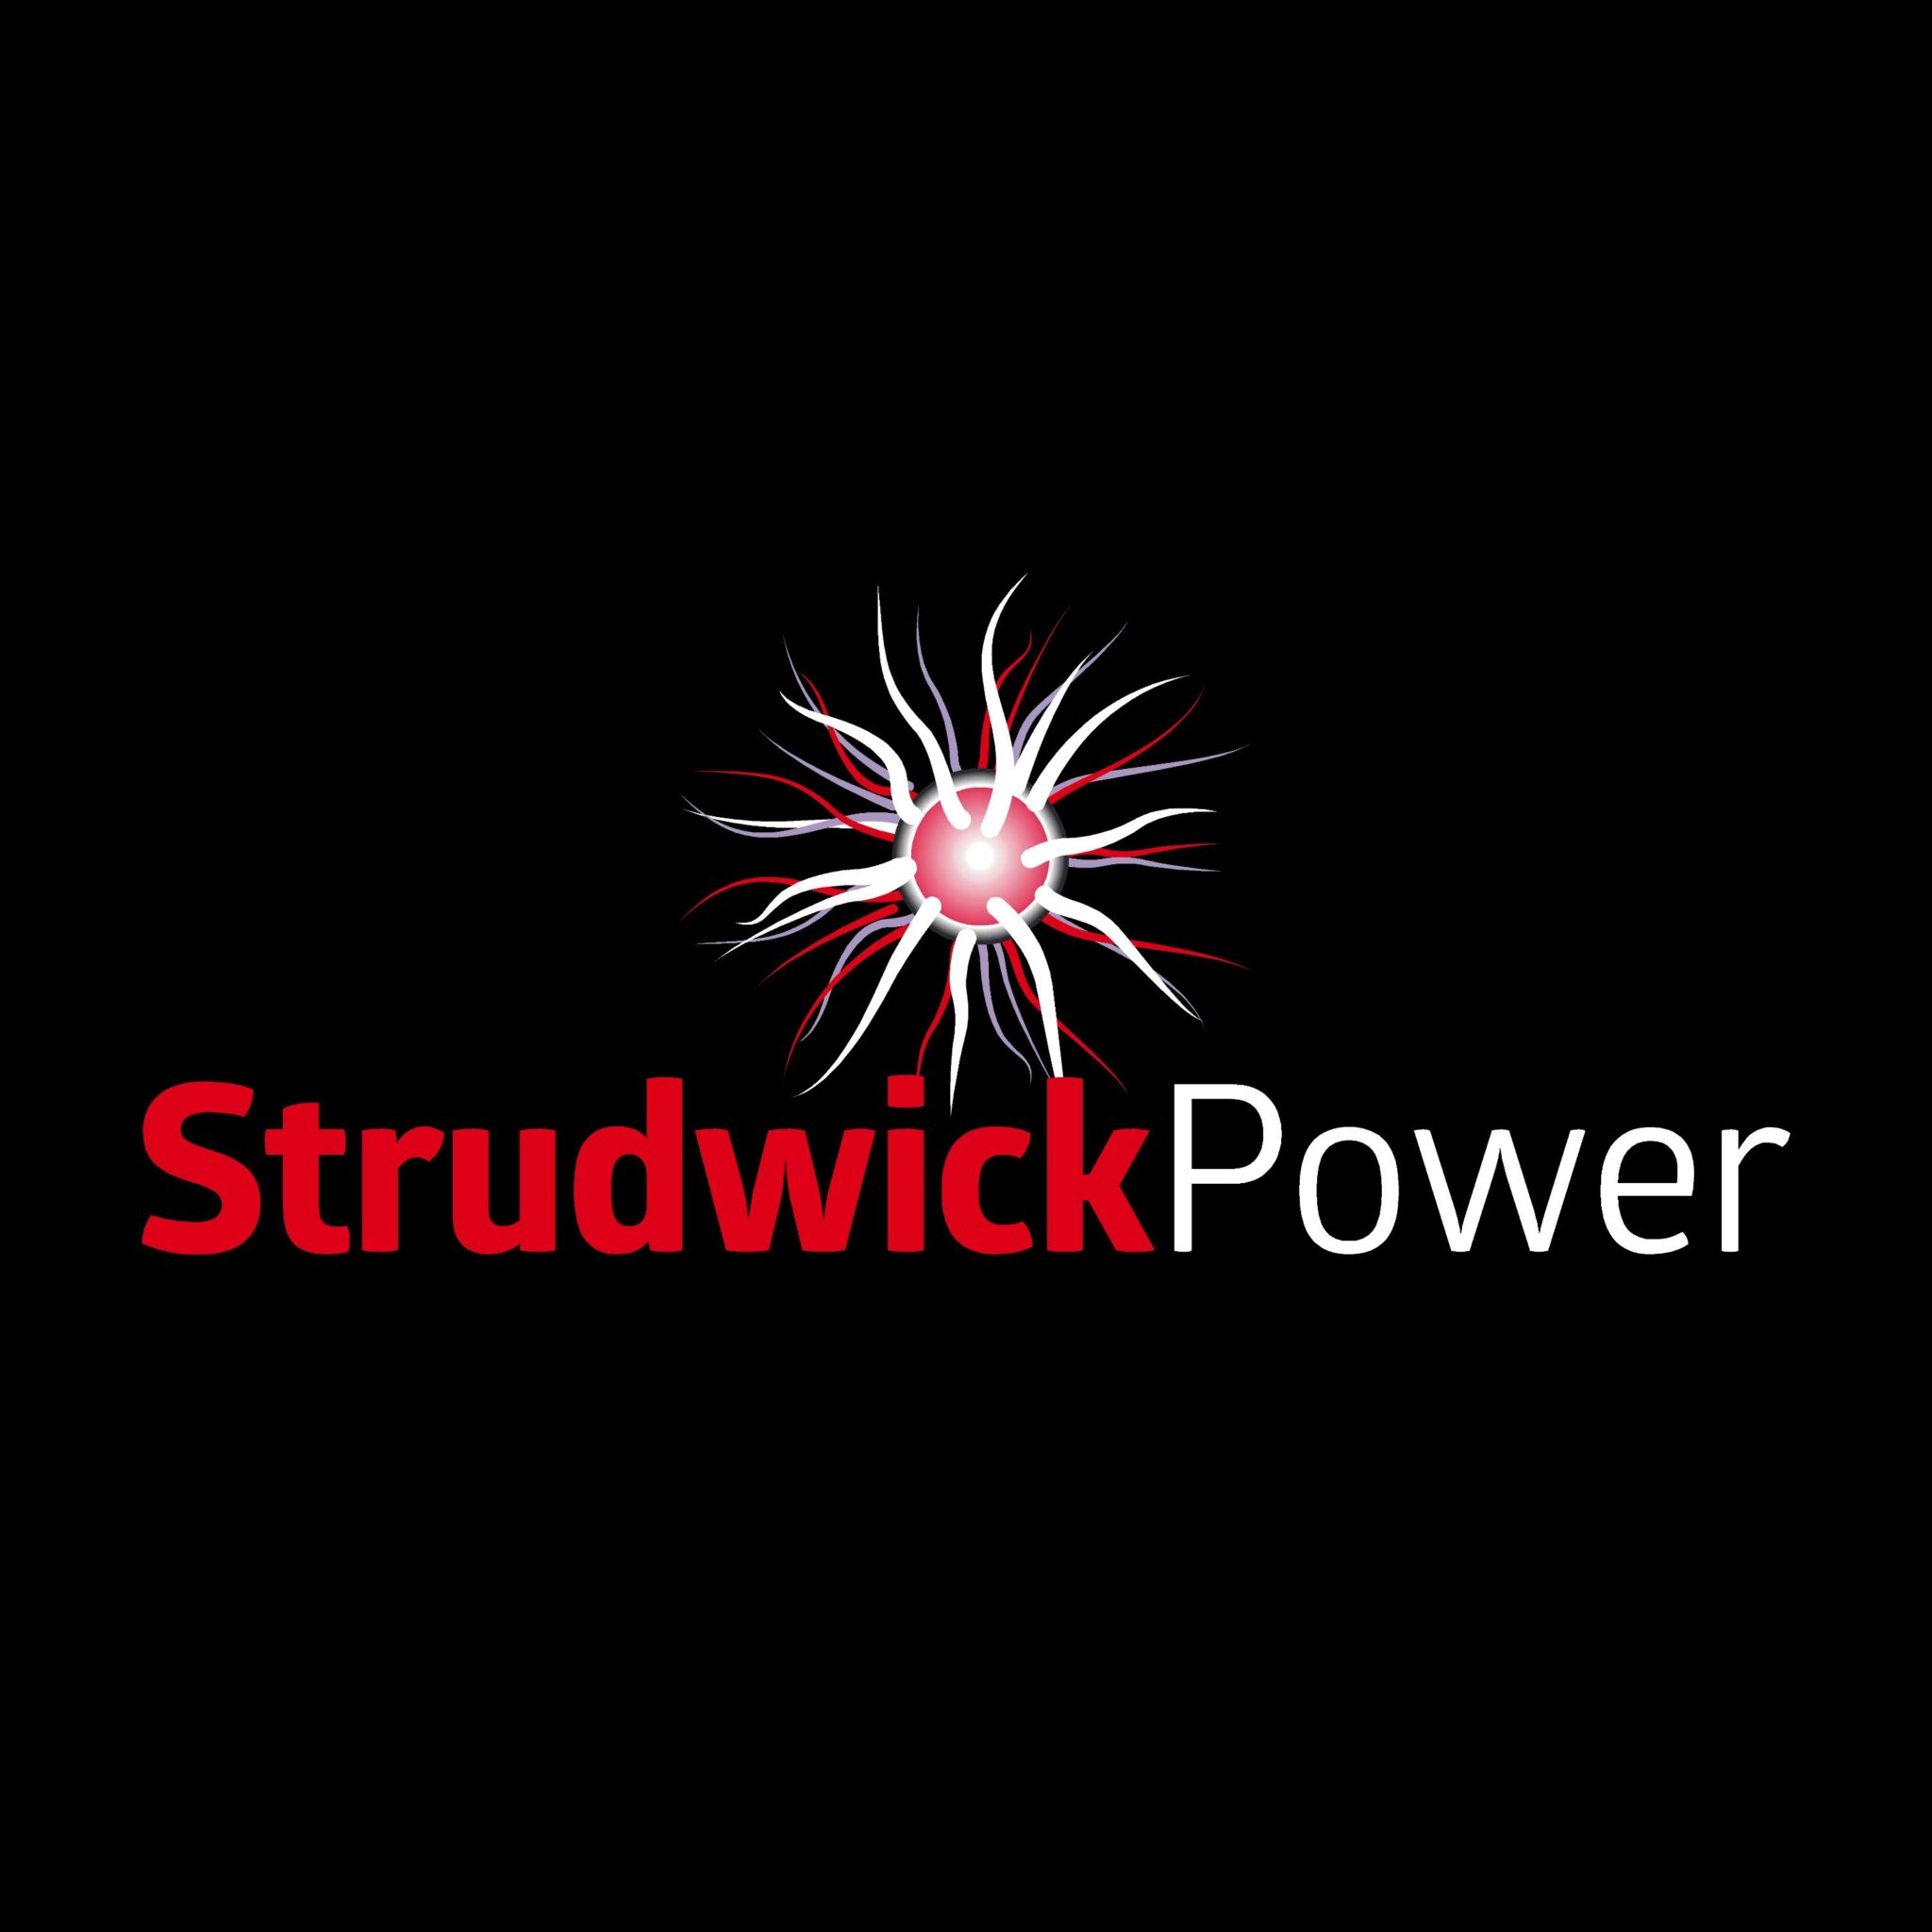 Strudwick Power